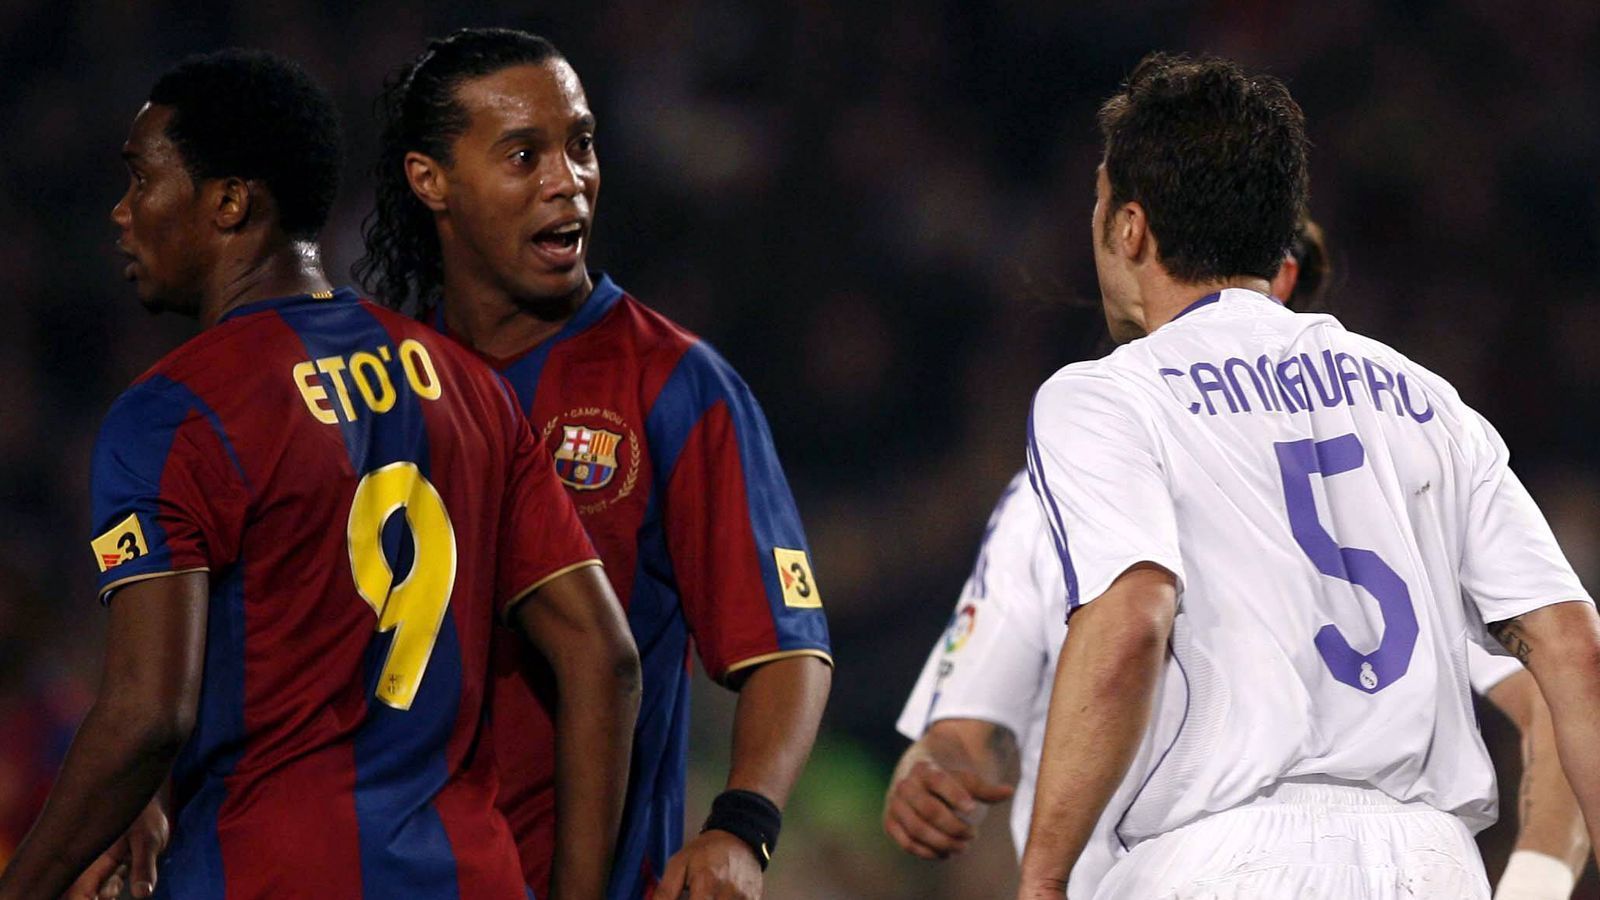 
                <strong>Clasico erstmals seit 2007 ohne CR7 und Messi: So sah die Welt damals aus</strong><br>
                Der letzte Clasico ohne mindestens einen der beiden Superstars liegt lange zurück: Am 23. Dezember 2007 gewinnt mit 1:0 in Barcelona, Ronaldinho, Raul und Ruud van Nistelrooy stürmen damals.
              